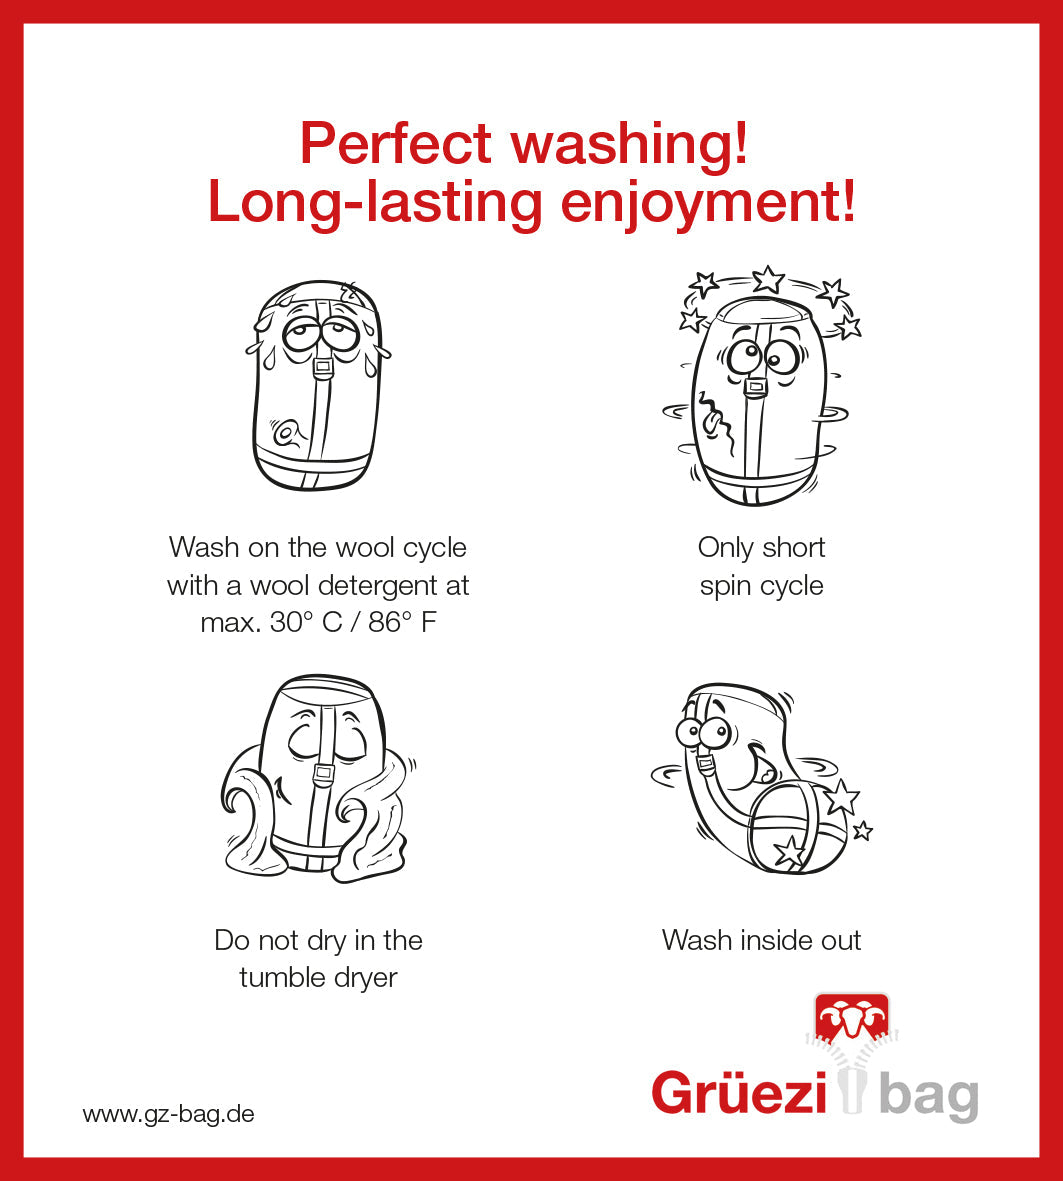 Grüezi bag Wollschlafsack Biopod Wolle Murmeltier Comfort XXL - Washing instructions english